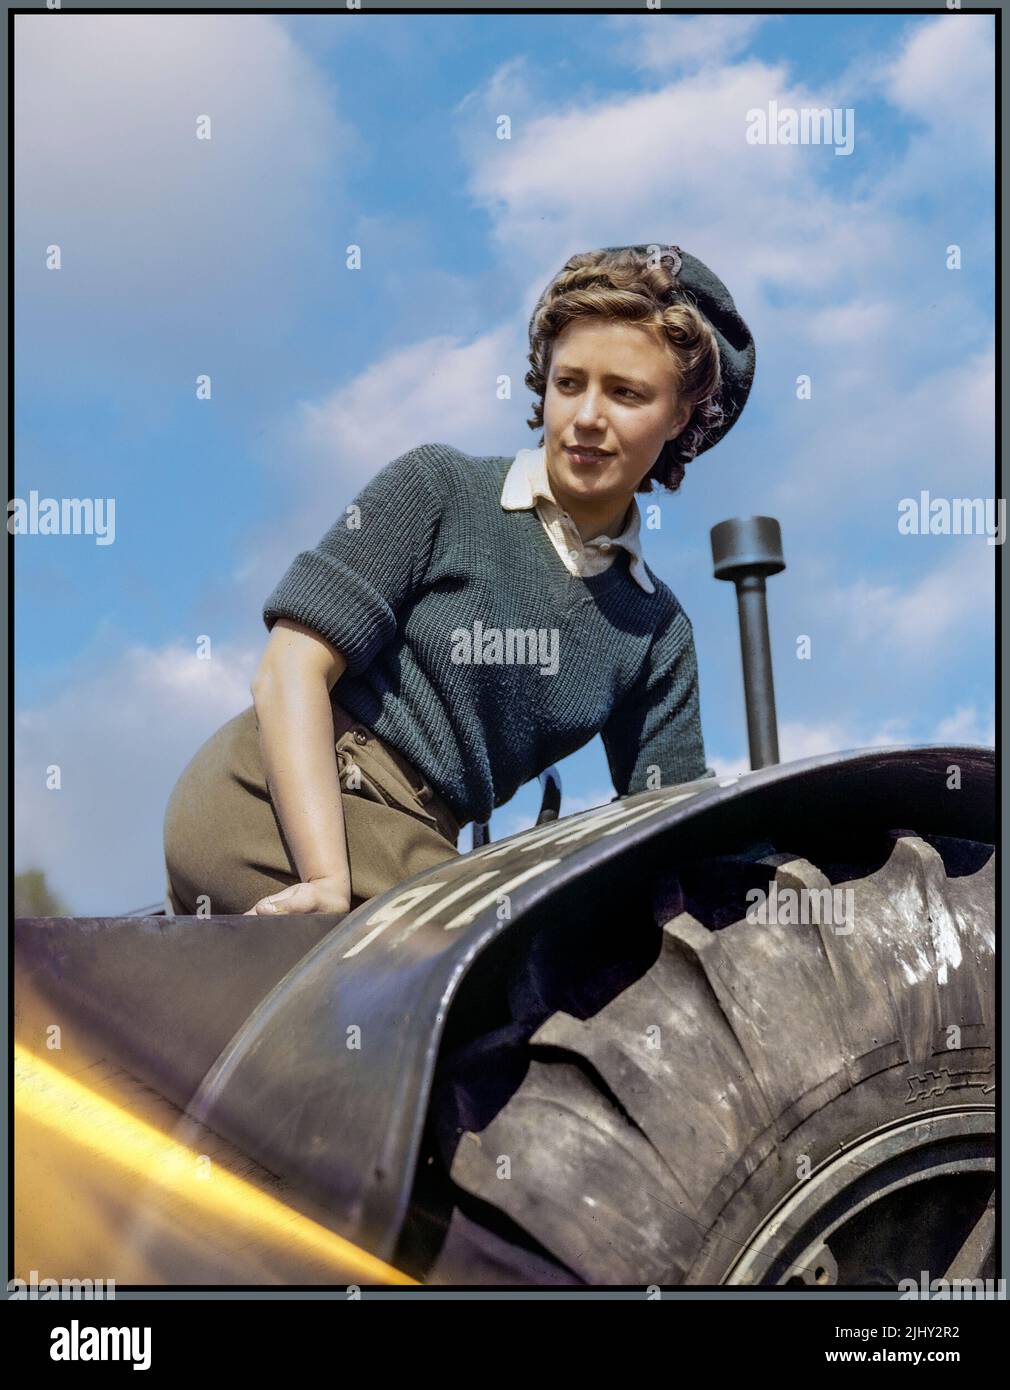 WW2 Doreen Bacchus, Mädchen der Landarmee, im Trainingslager des Women's Timber Corps in Culford in Suffolk. Propagandabild der landwirtschaftlichen Nahrungsmittelproduktion über Land Army (WLA) während WW2 1940 Mädchen der Womens Land Army auf einem Traktor. Großbritannien britischer Weltkrieg II. Weltkrieg Stockfoto